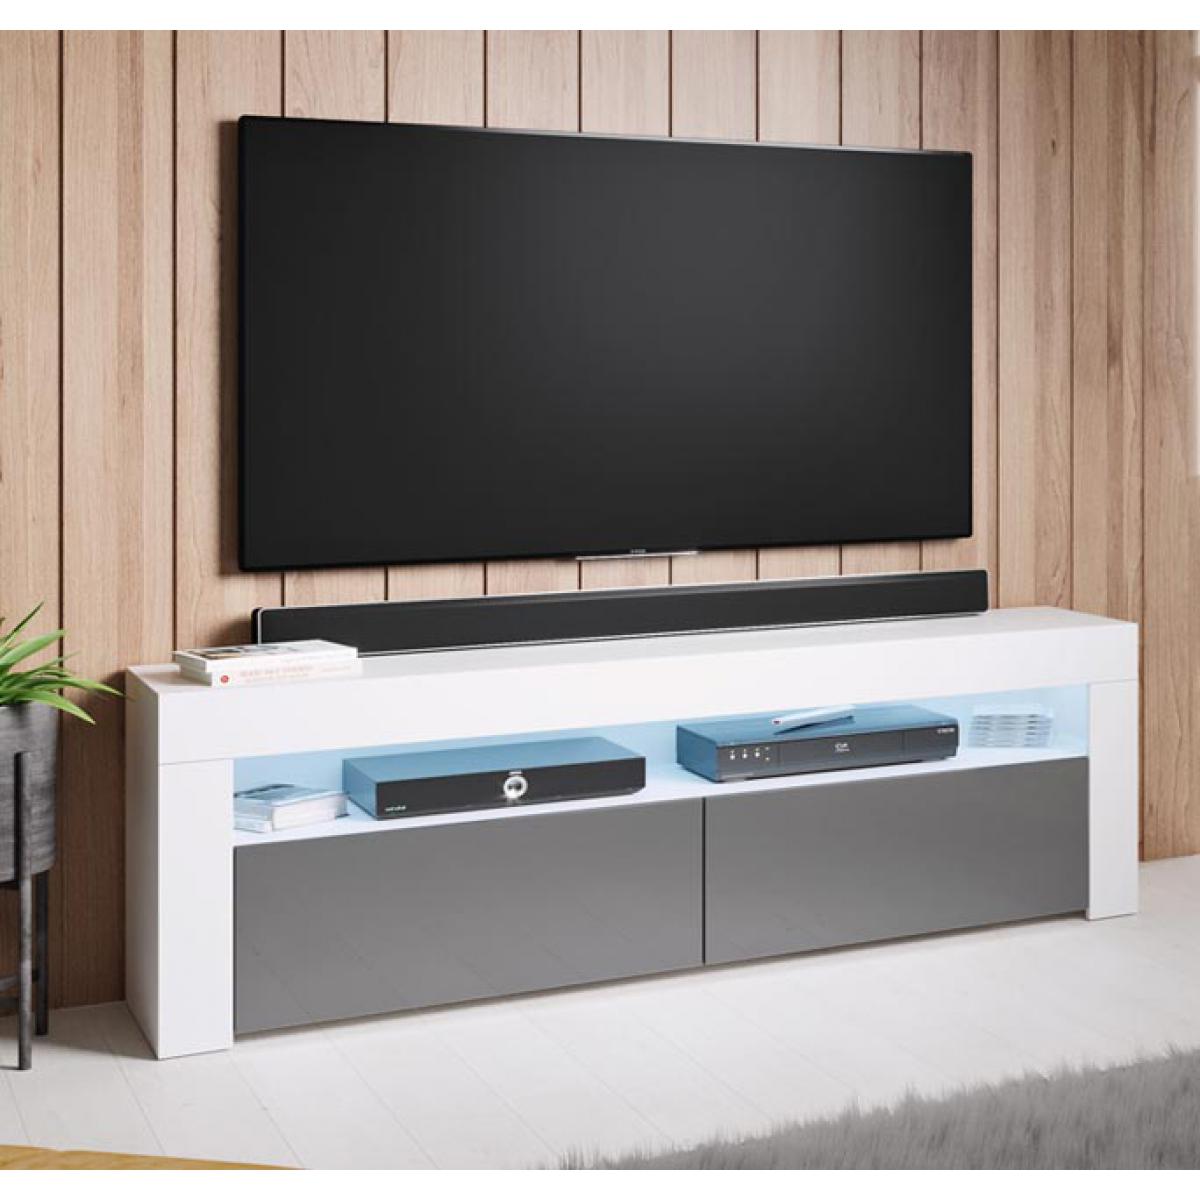 Design Ameublement - Meuble TV modèle Aker (140x50,5cm) couleur blanc et gris - Meubles TV, Hi-Fi